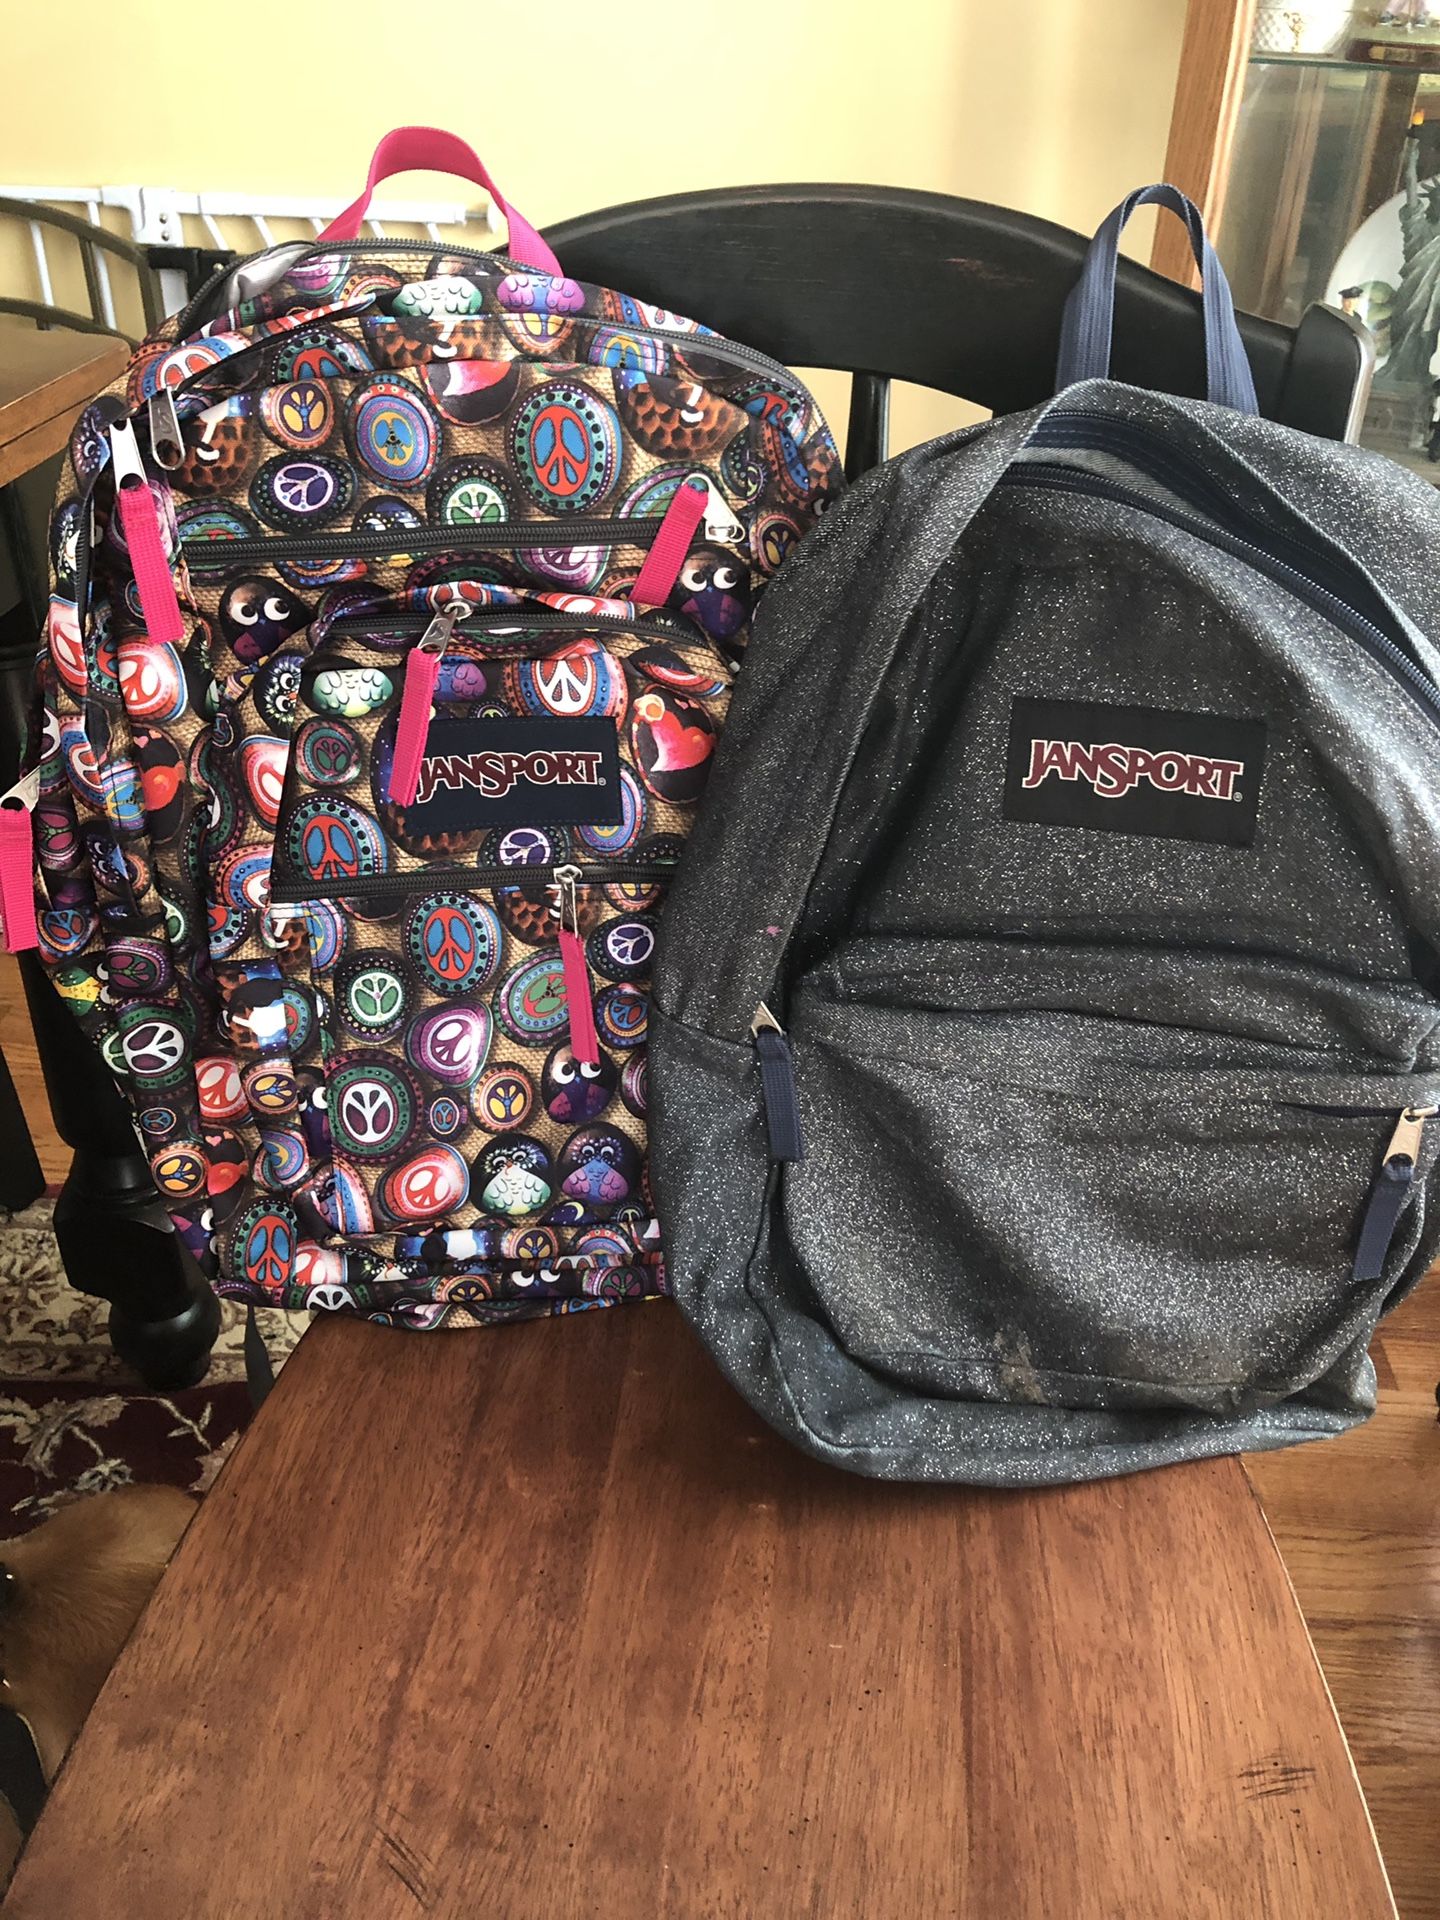 2 Jansport backpacks